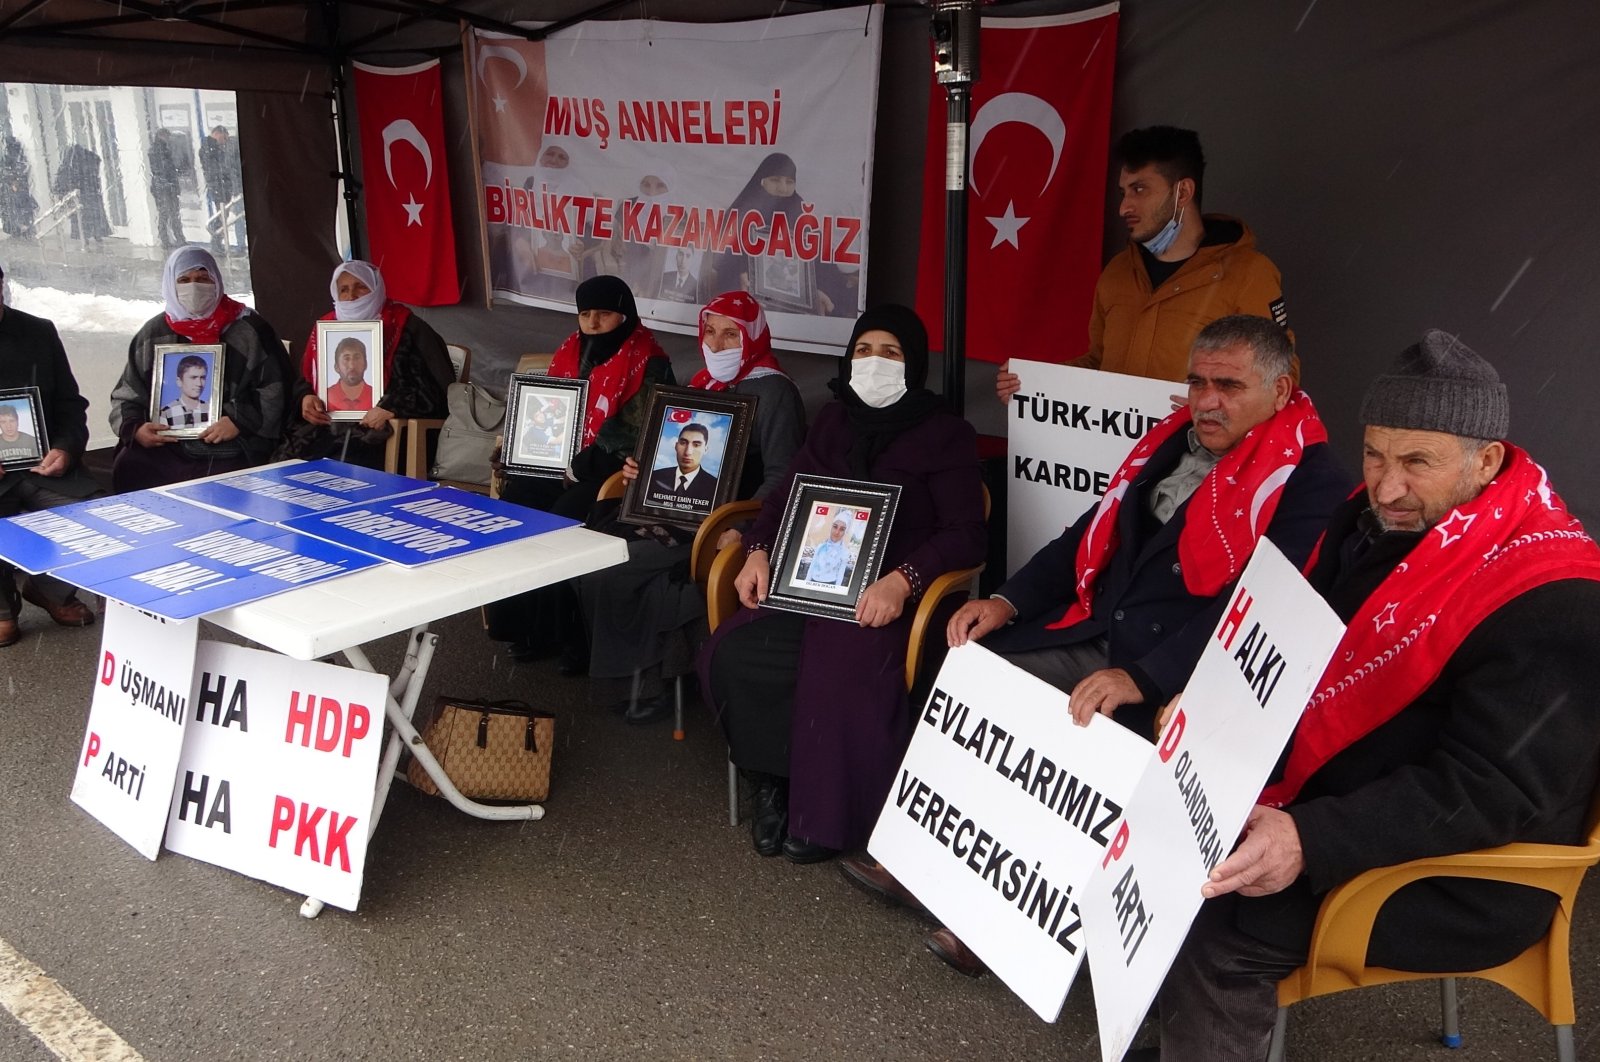 Jumlah keluarga yang memprotes PKK di provinsi Mu meningkat menjadi 29